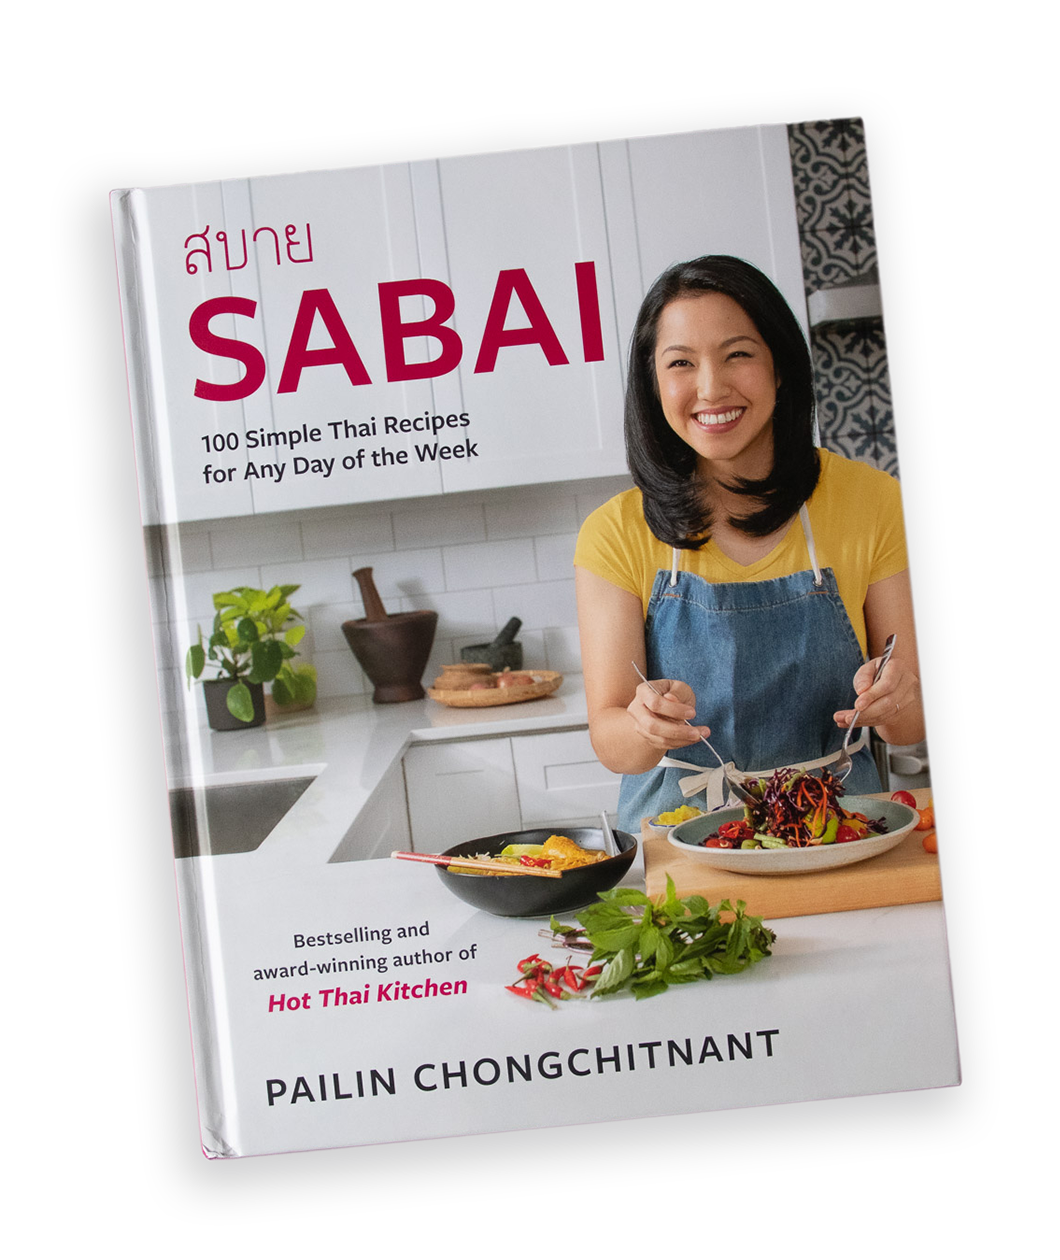 A cookbook title 